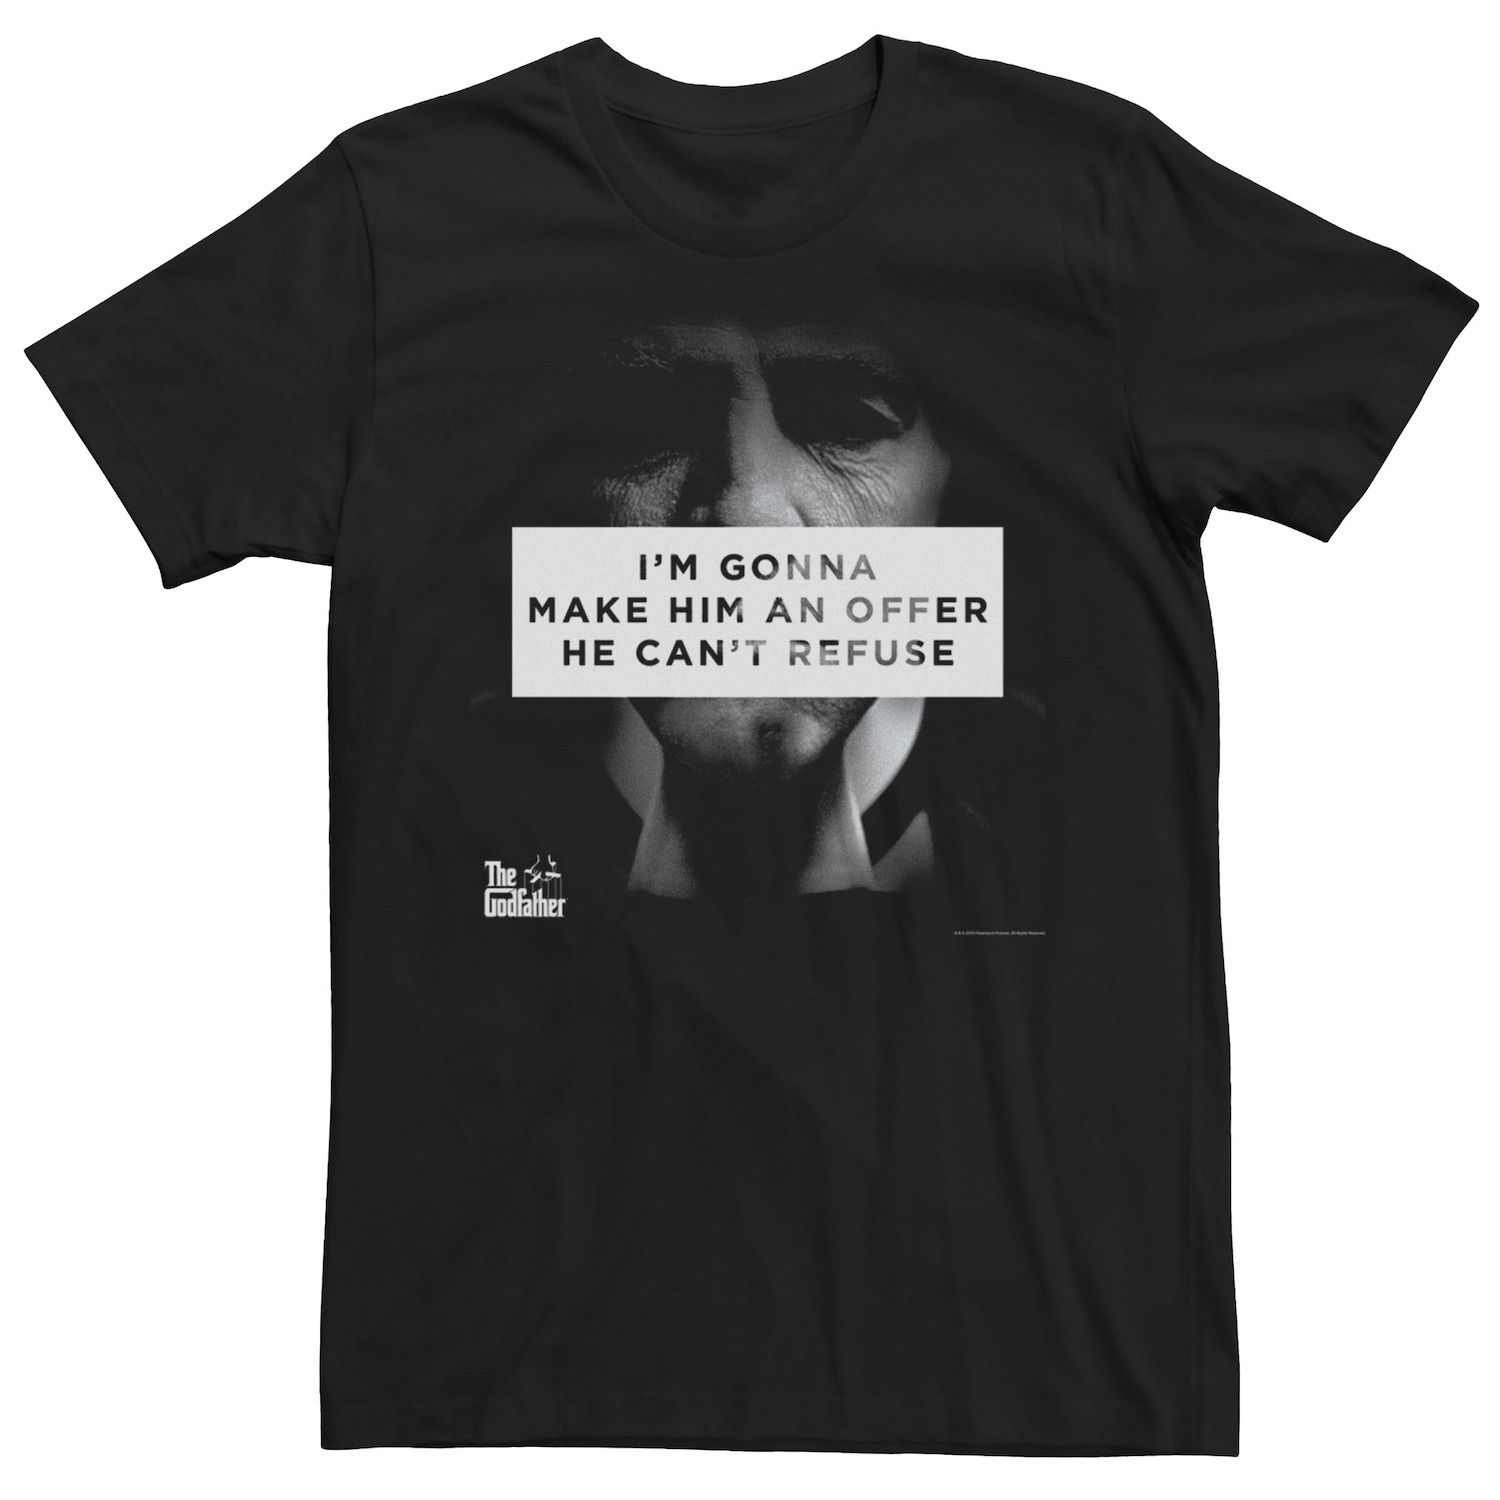 францезе майкл менеджер мафии предложение от которого нельзя отказаться Мужская футболка The Godfather — предложение, от которого он не может отказаться Licensed Character